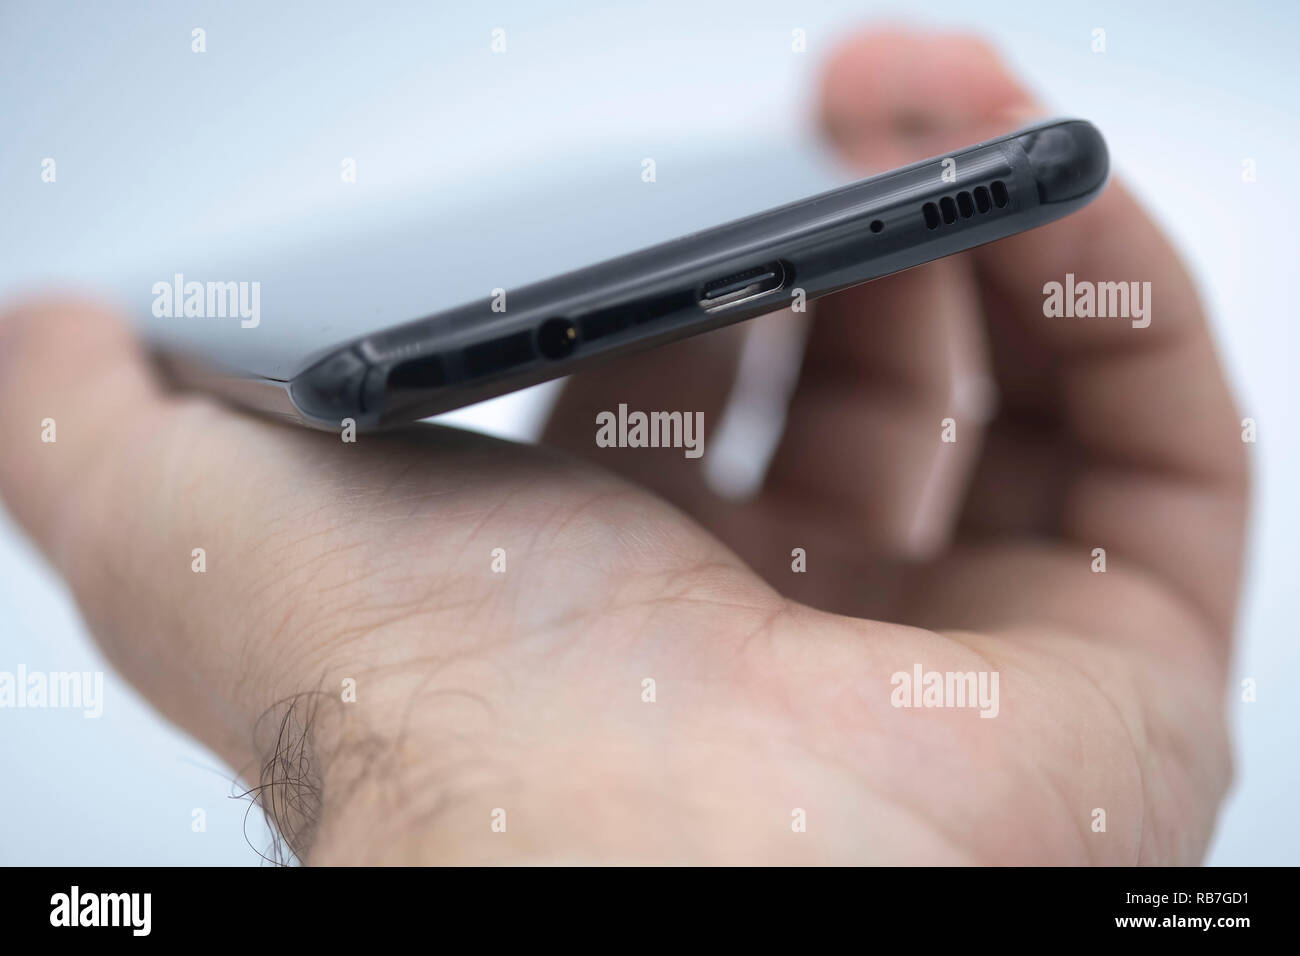 USB-C Puerto de carga, puerto de salida de auriculares de 3,5 mm, micrófono y altavoz rejillas en la parte inferior de un Samsung Galaxy S8 plus teléfono inteligente Foto de stock